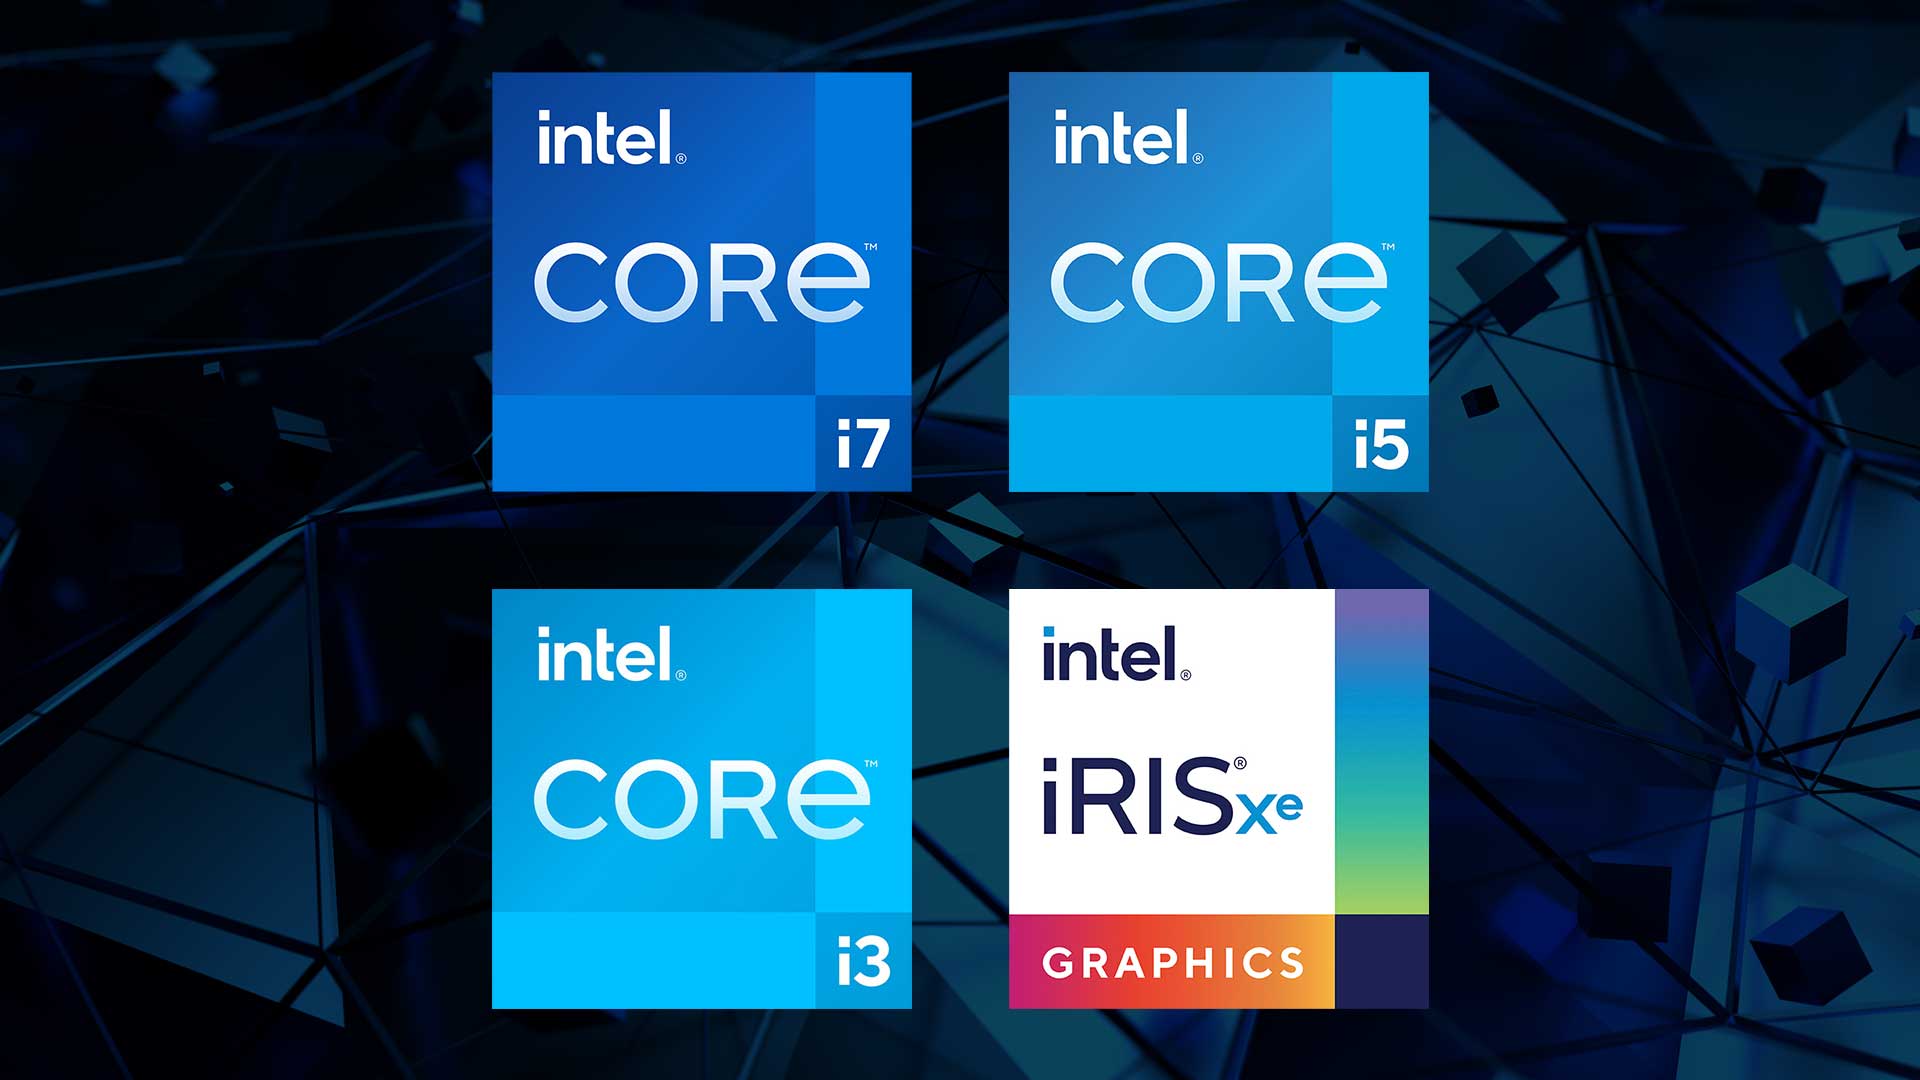 第12世代 インテル Core プロセッサー